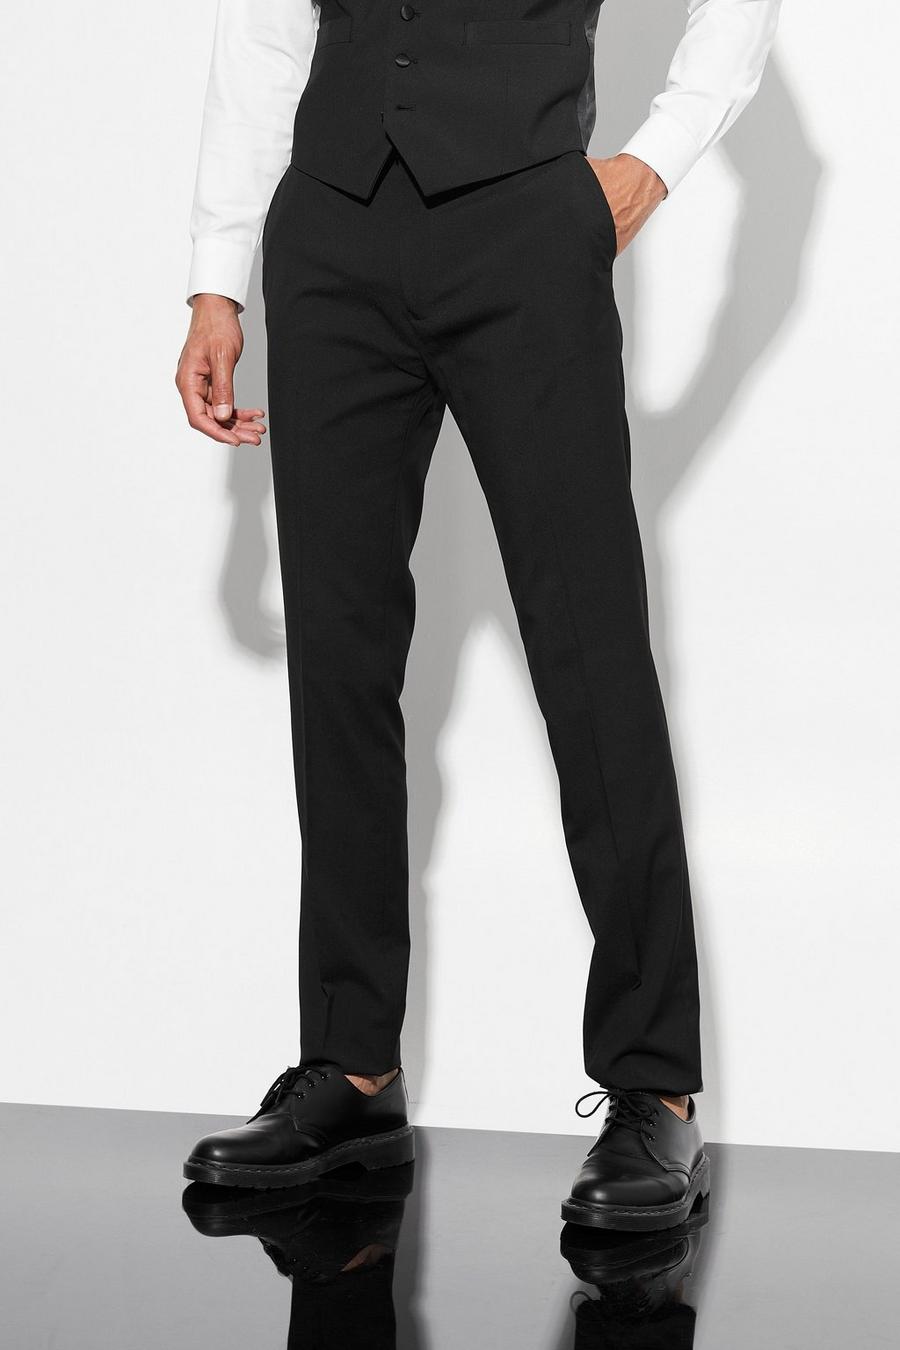 Black noir Tall Skinny Tuxedo Suit Trouser